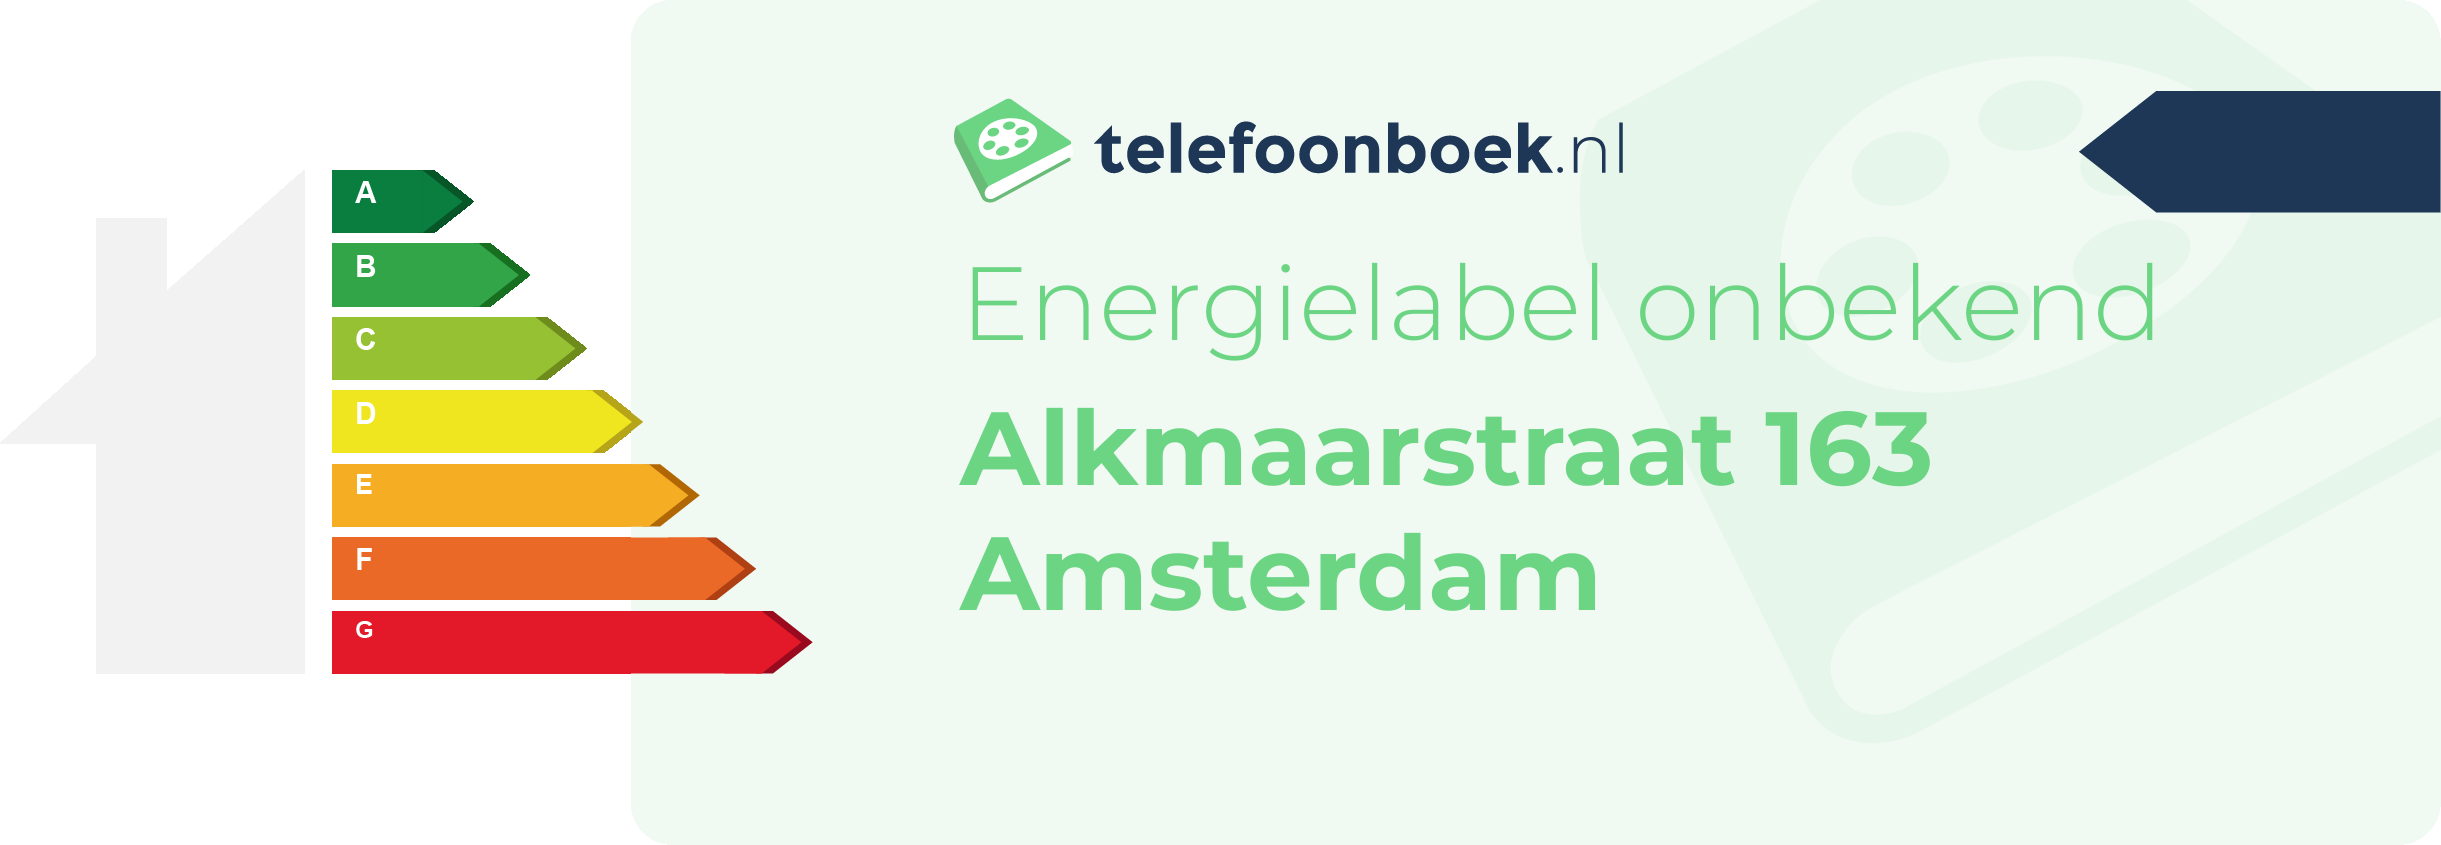 Energielabel Alkmaarstraat 163 Amsterdam